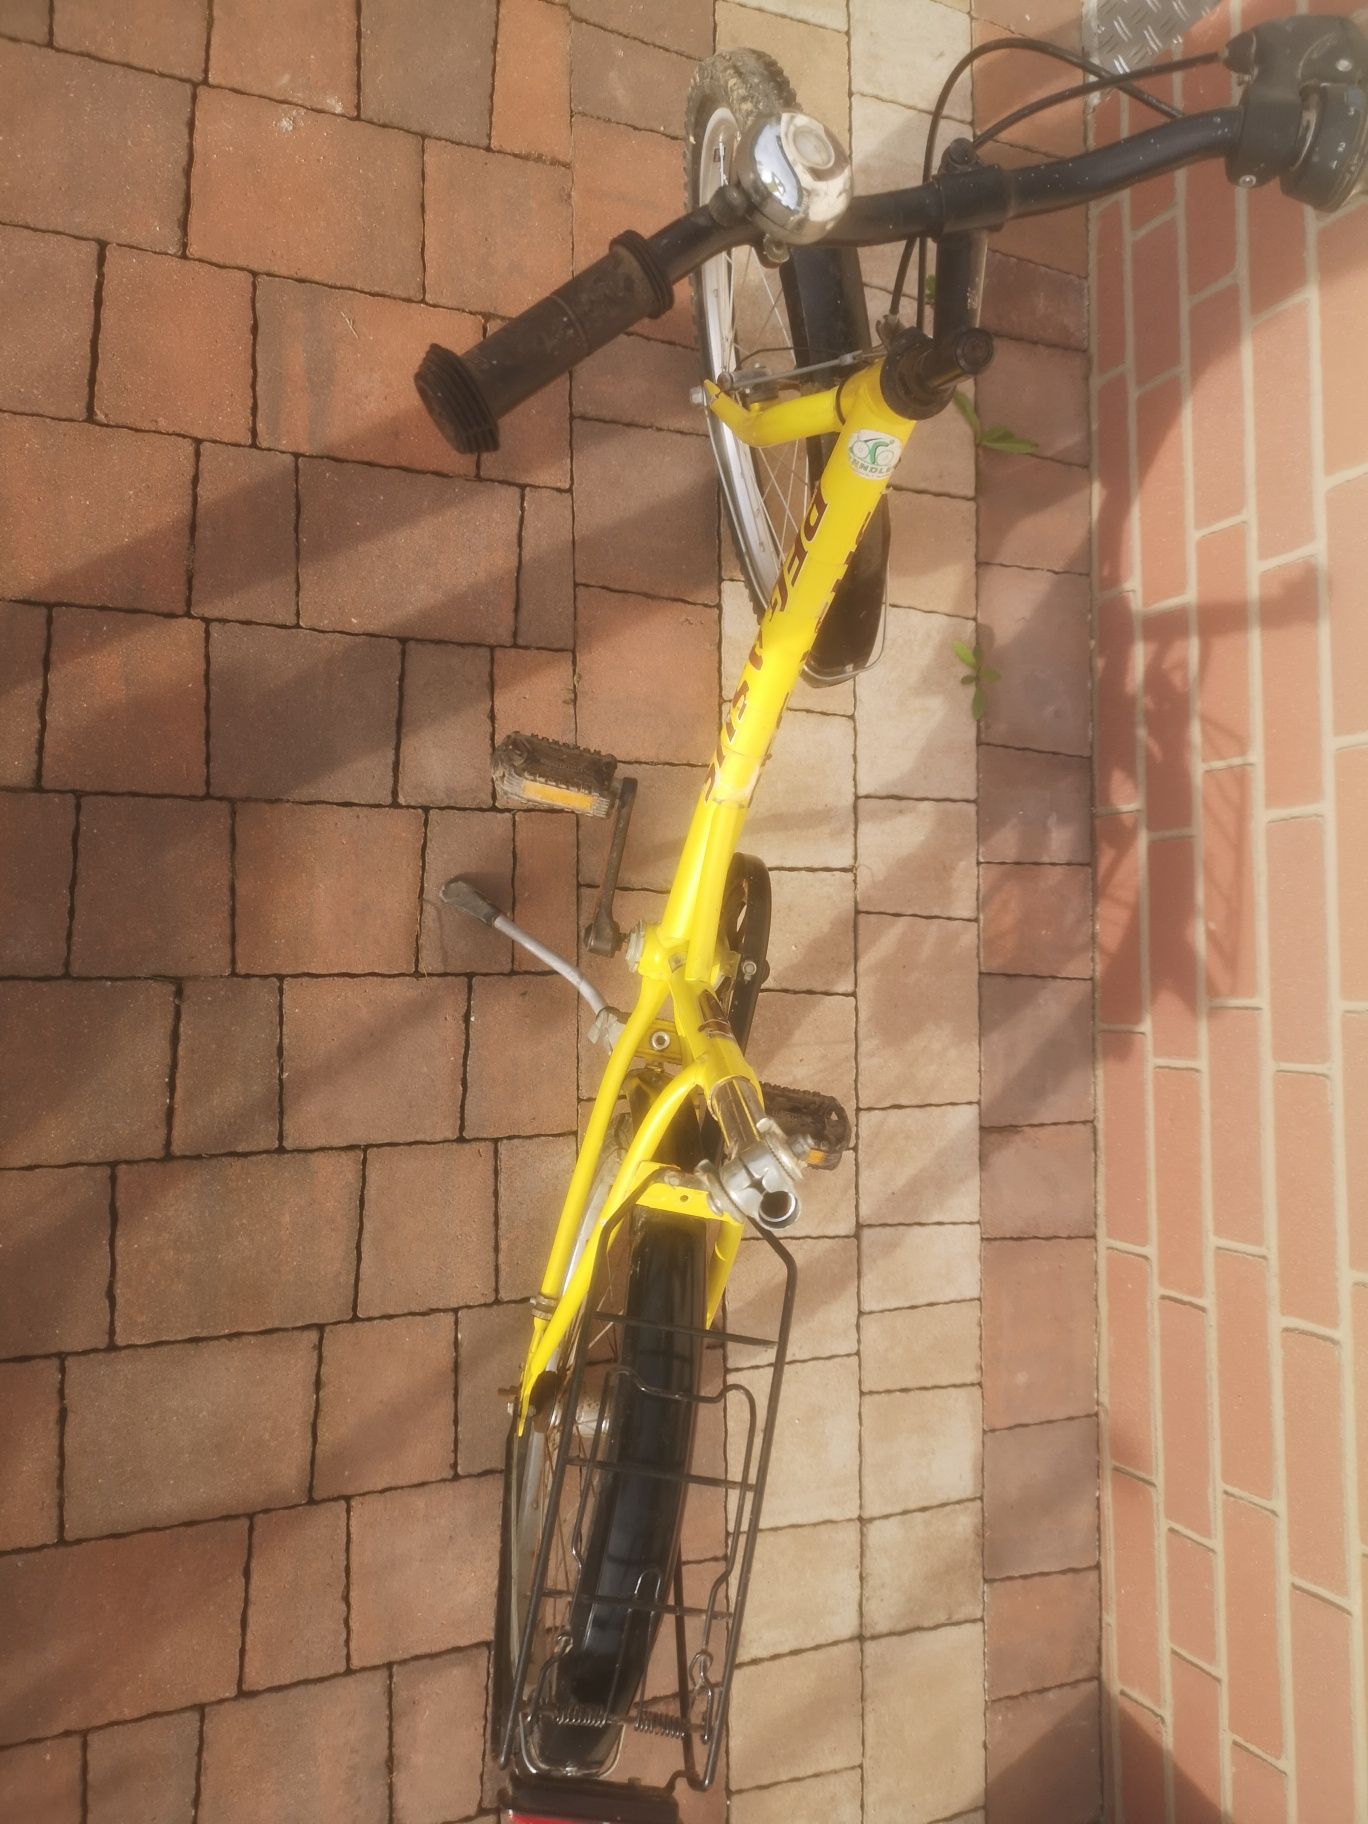 rower dziecięcy żółty